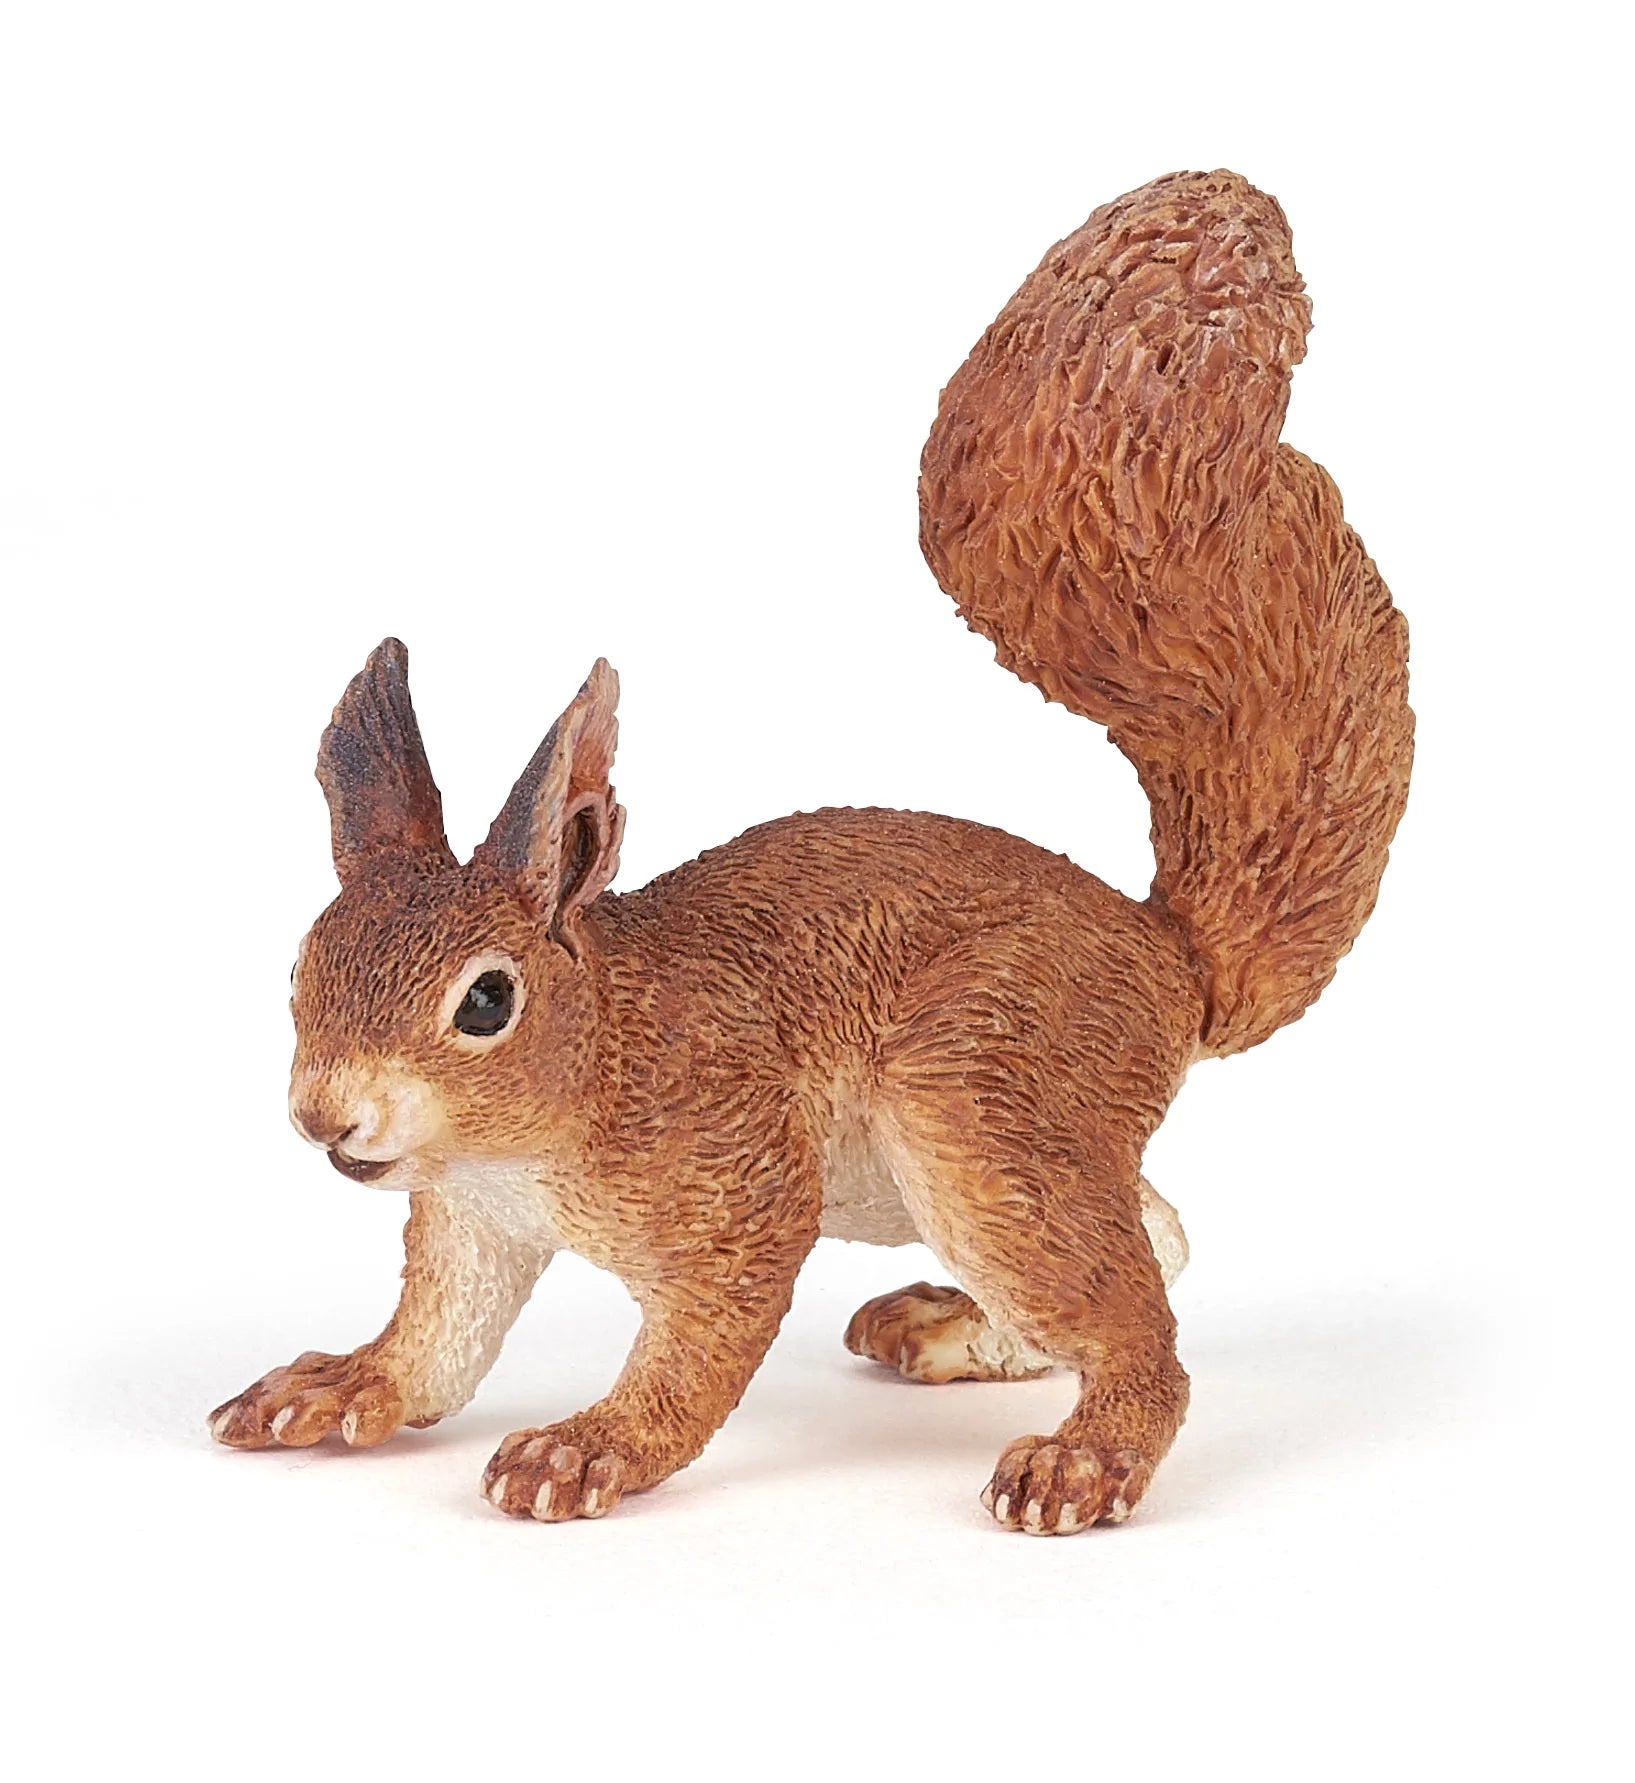 Figurine - Squirrel